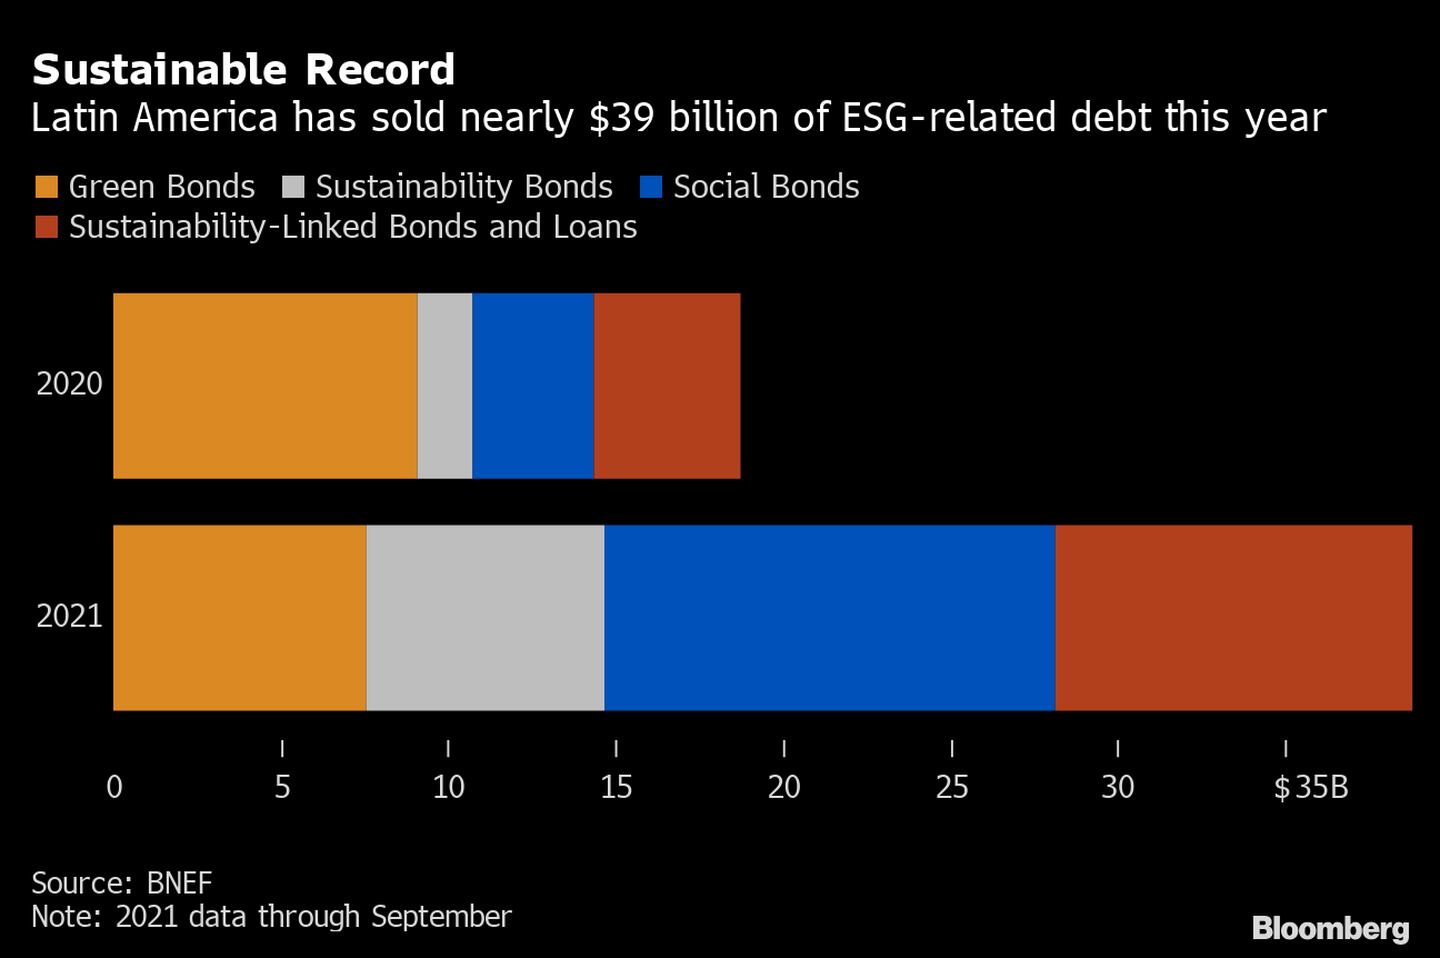 Este ano, a América Latina vendeu cerca de US$ 39 mil em dívidas vinculadas a fatores ESGdfd